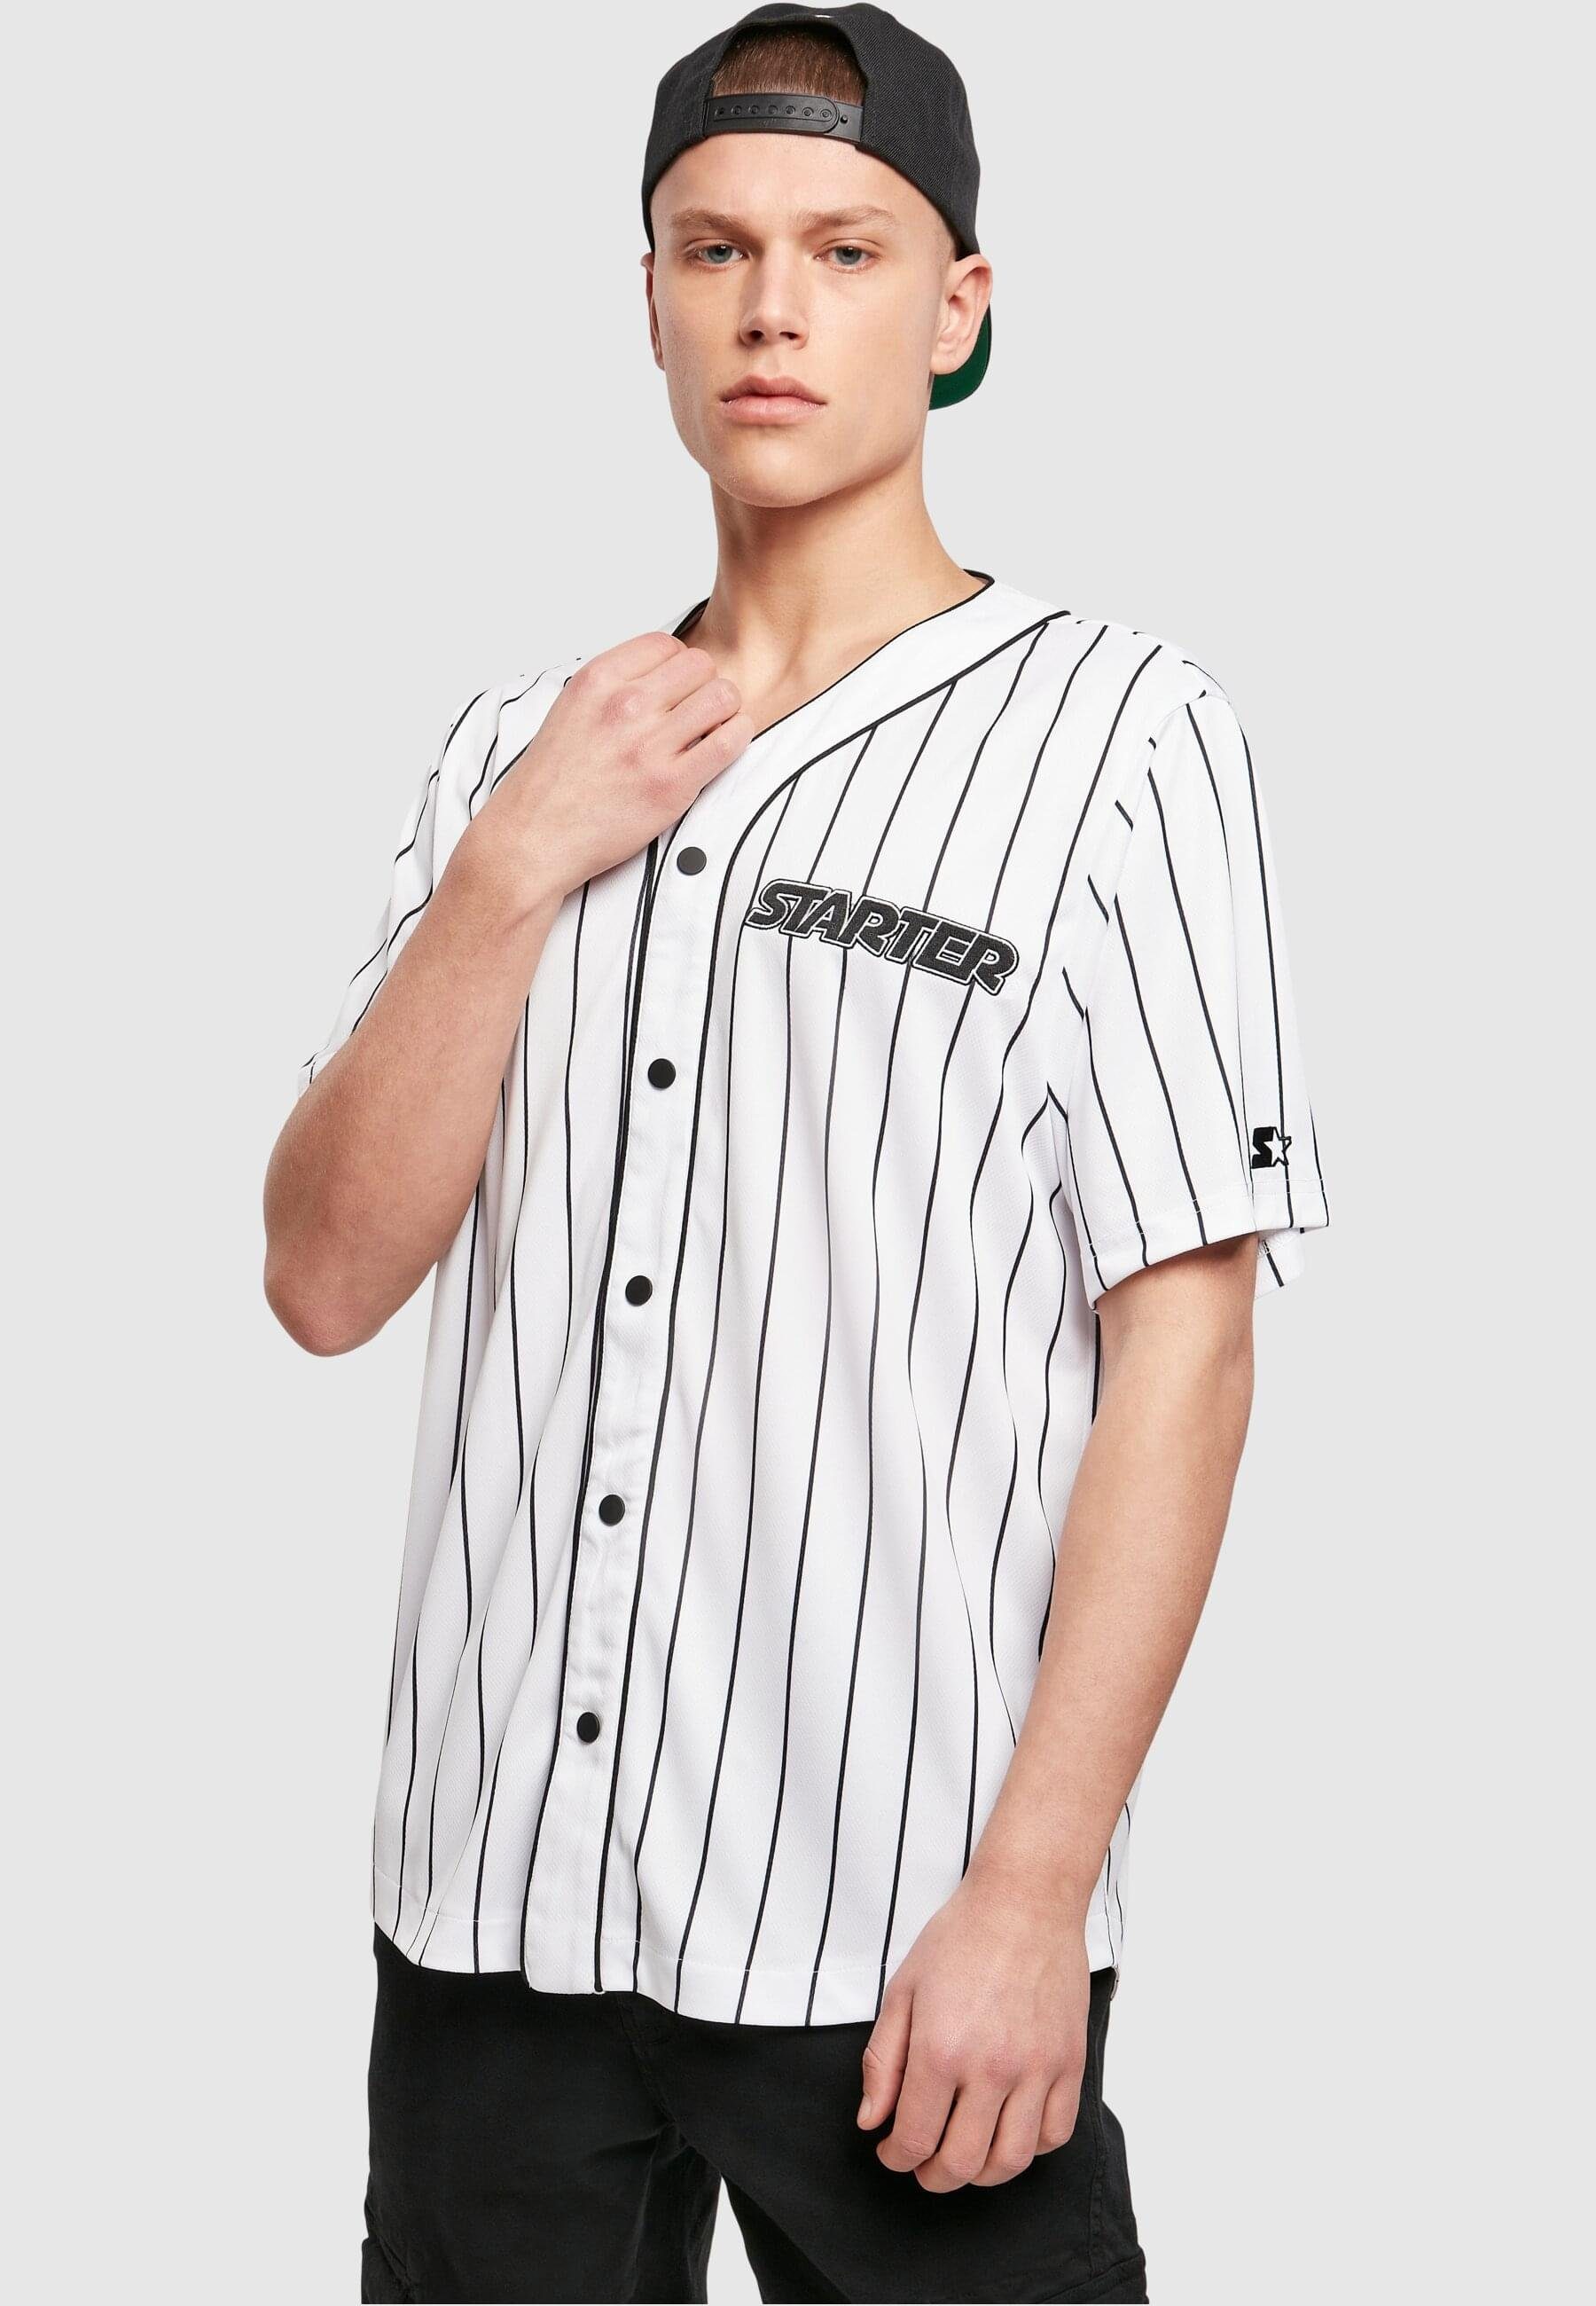 Langarmhemd Starter Black Label white Jersey Starter Starter (1-tlg) Baseball Herren